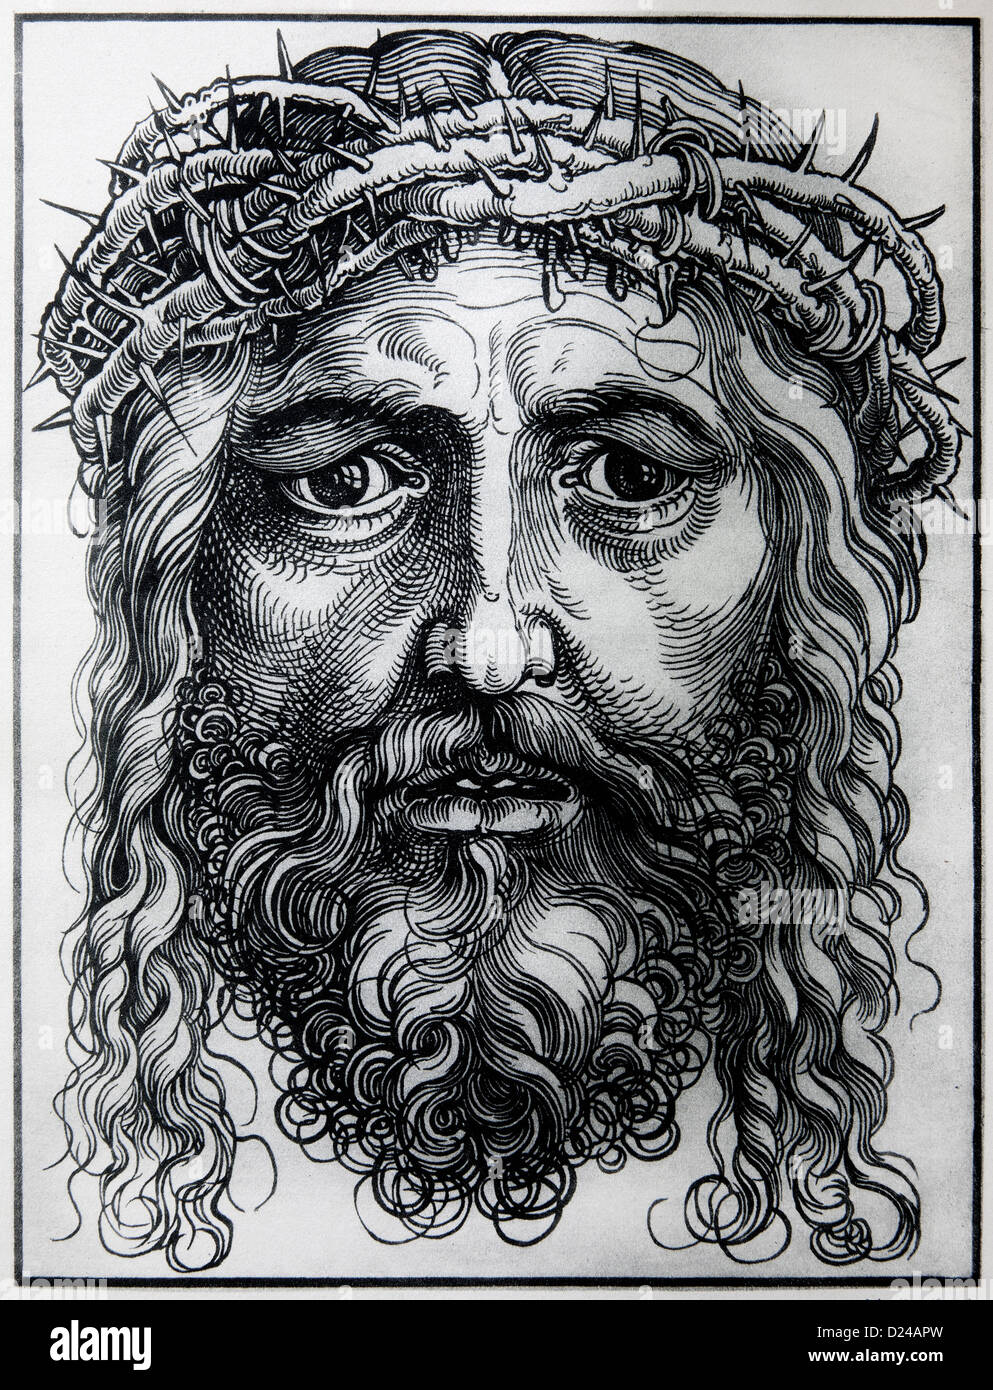 Deutschland - 1928: Lithographie der Kopf von Jesus Christus durch Albert Durer. Stockfoto